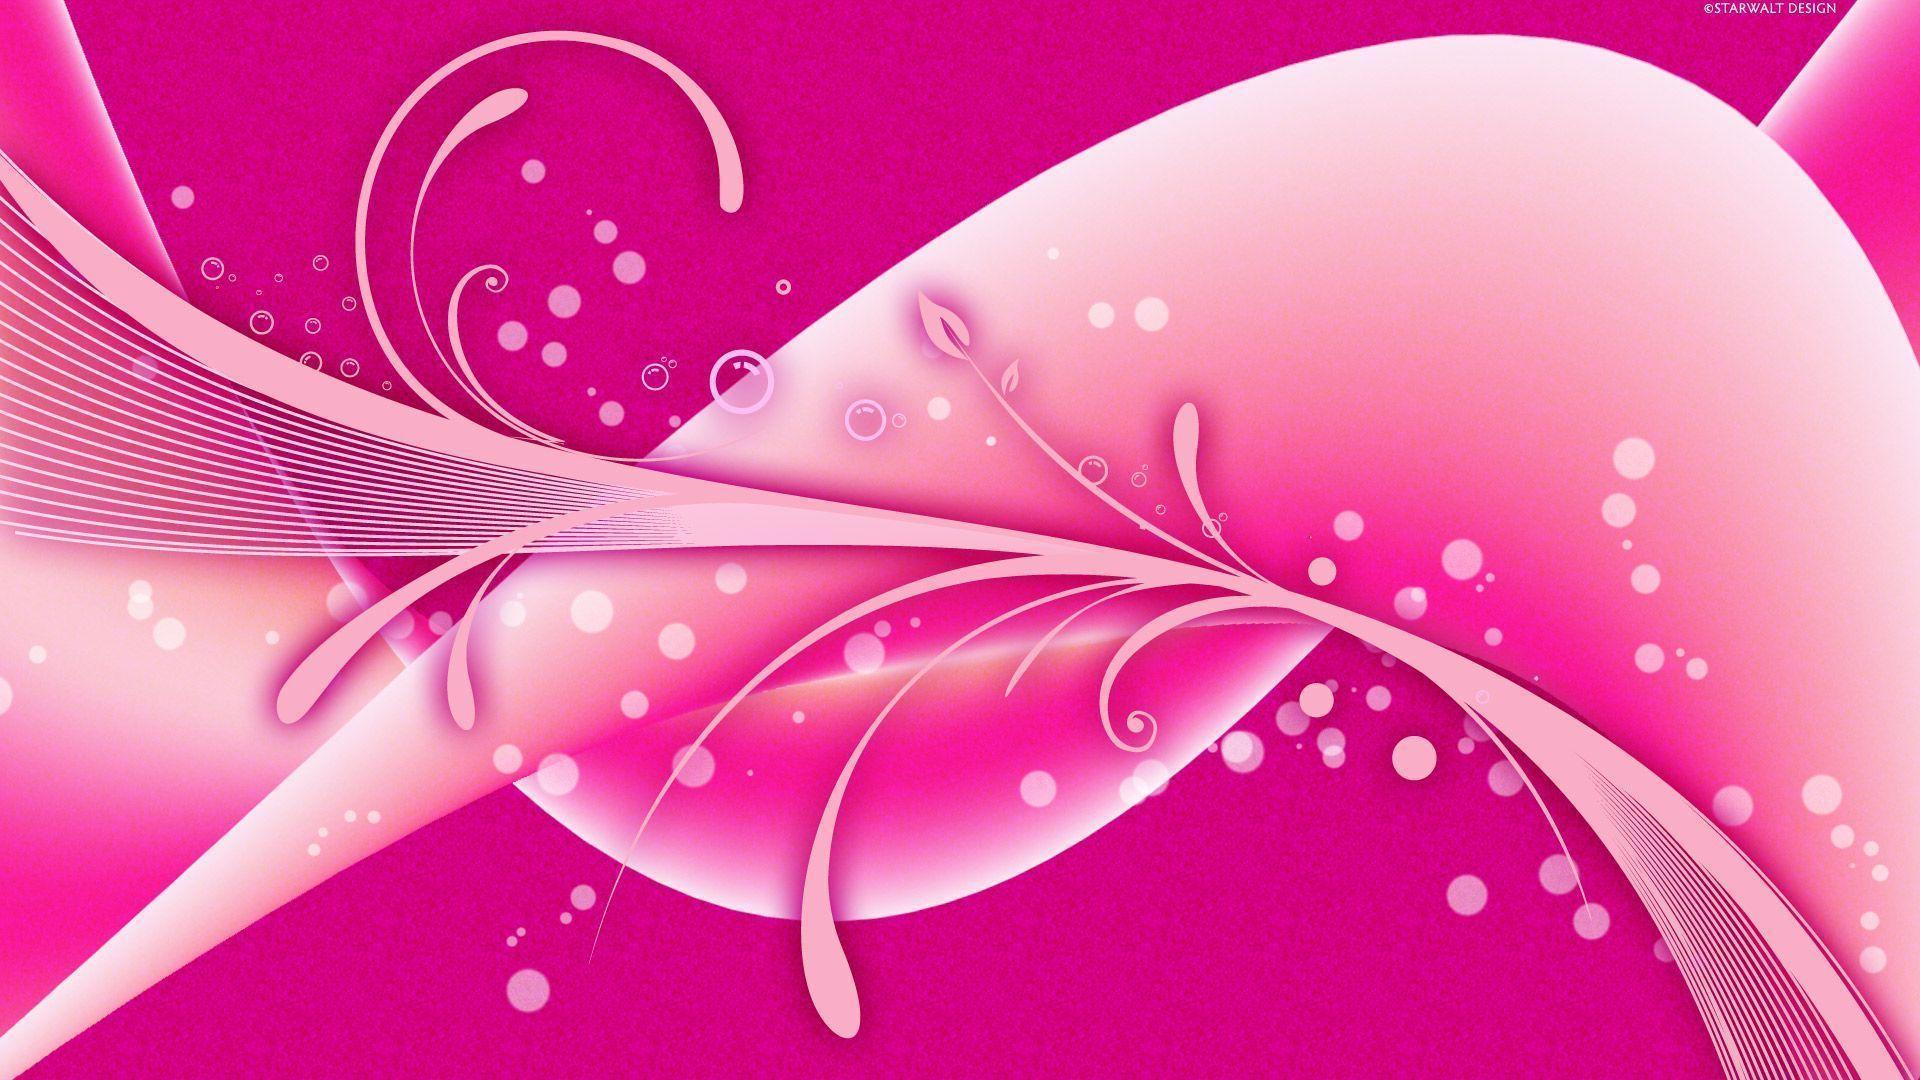 Free Vector Background Pink Vector Design Download. Vector